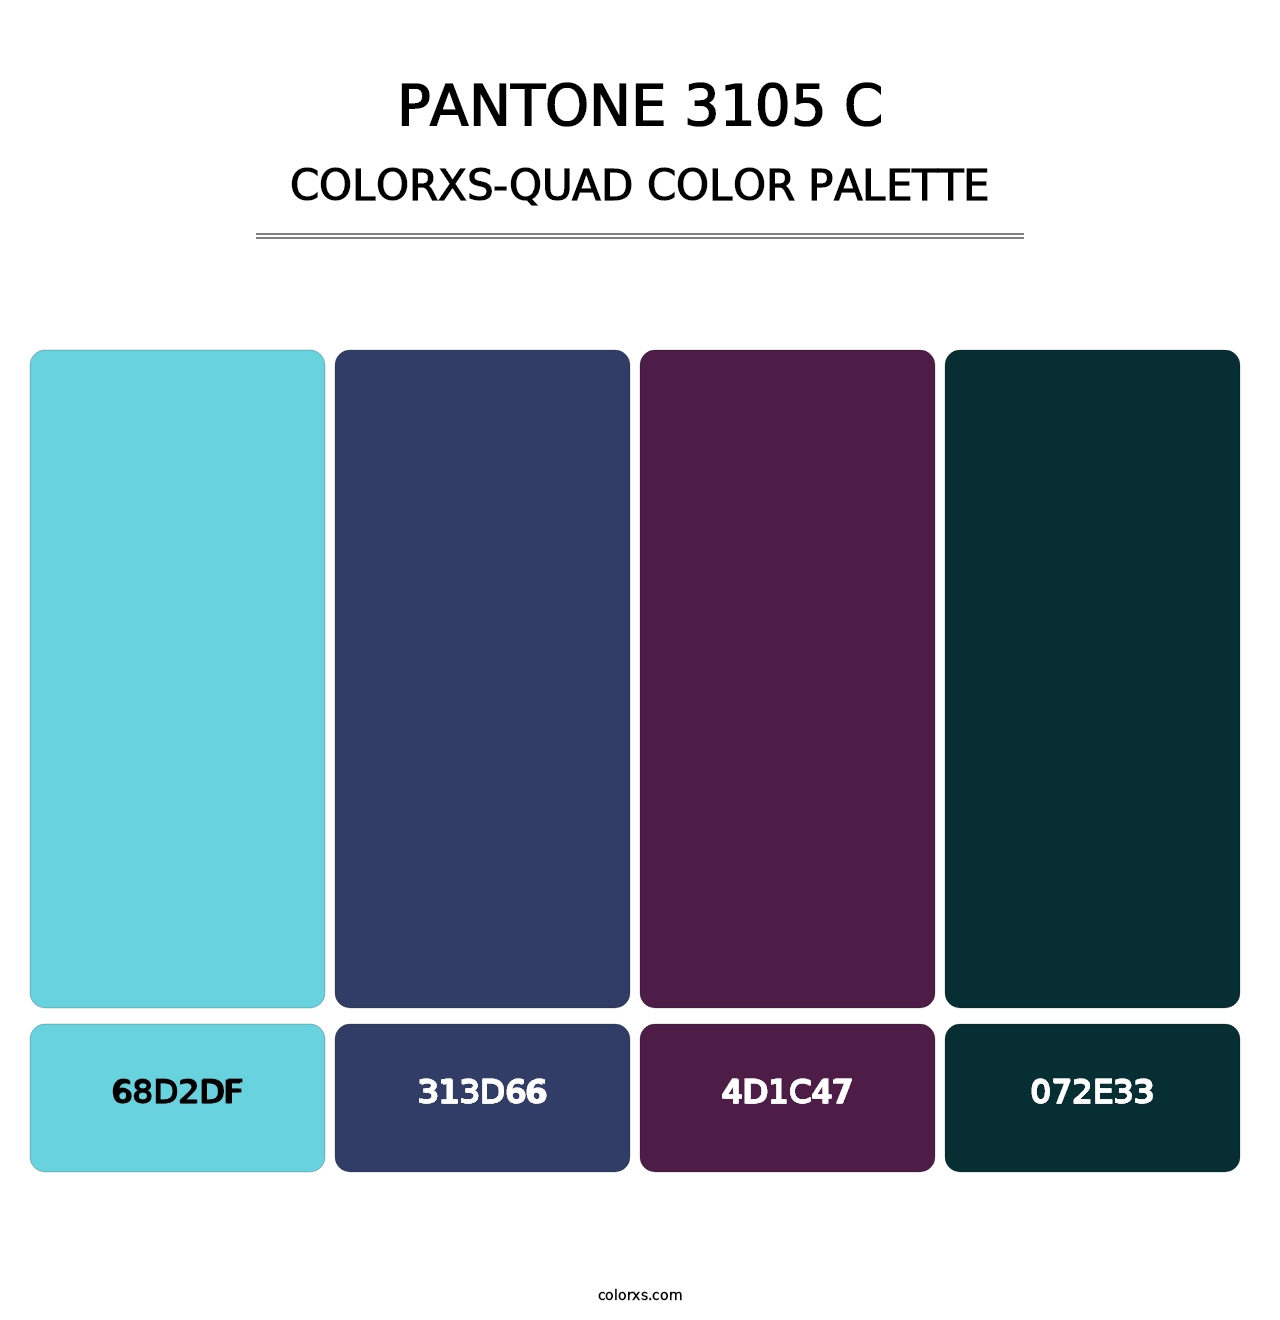 PANTONE 3105 C - Colorxs Quad Palette